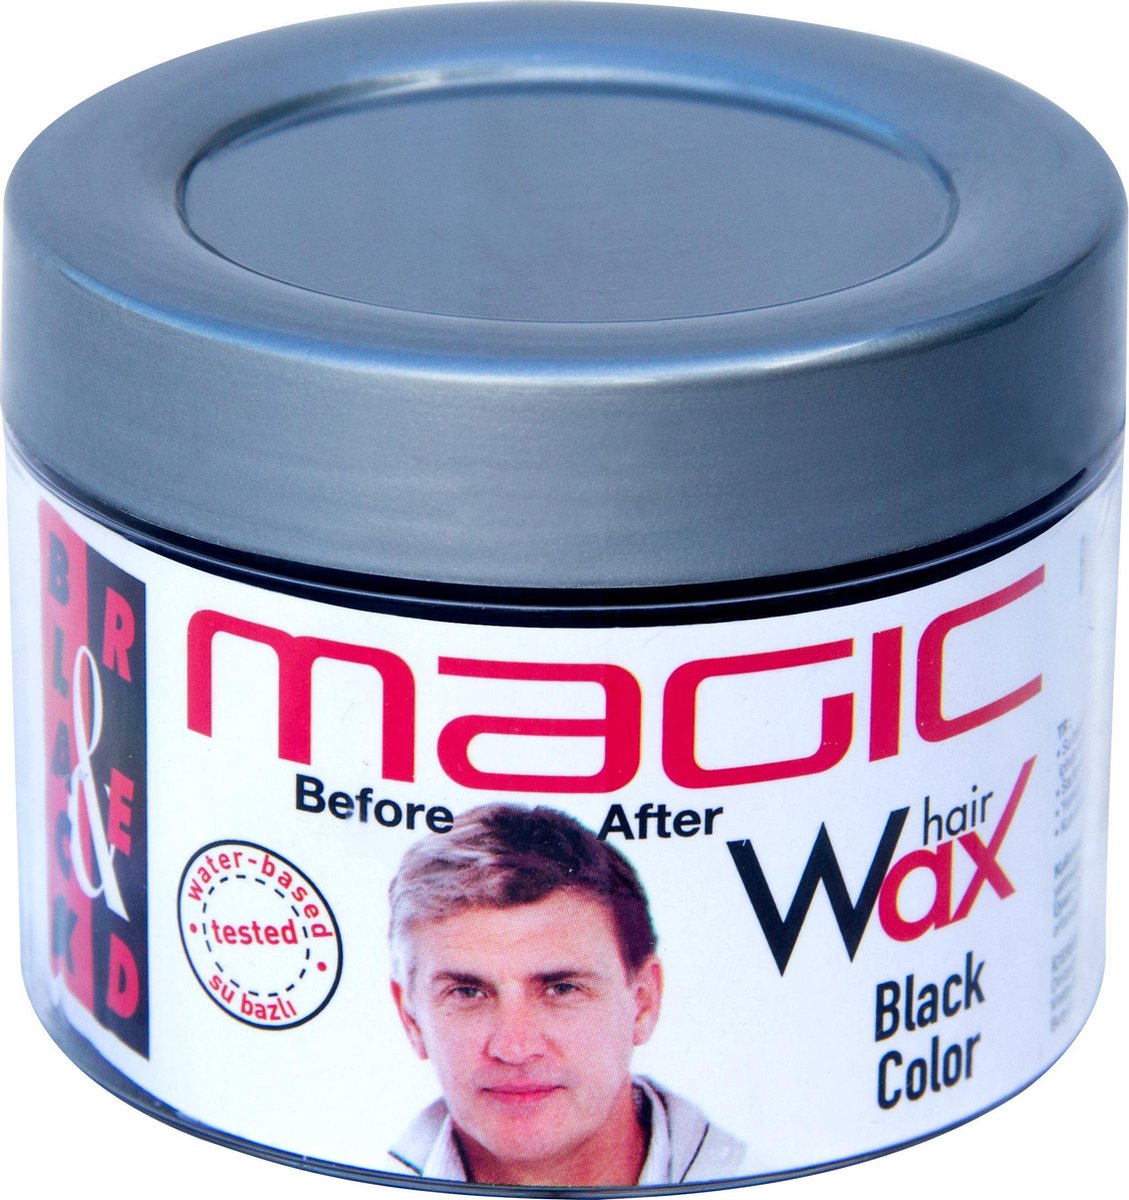 Blac & Red Magic Hair Wax Black Color